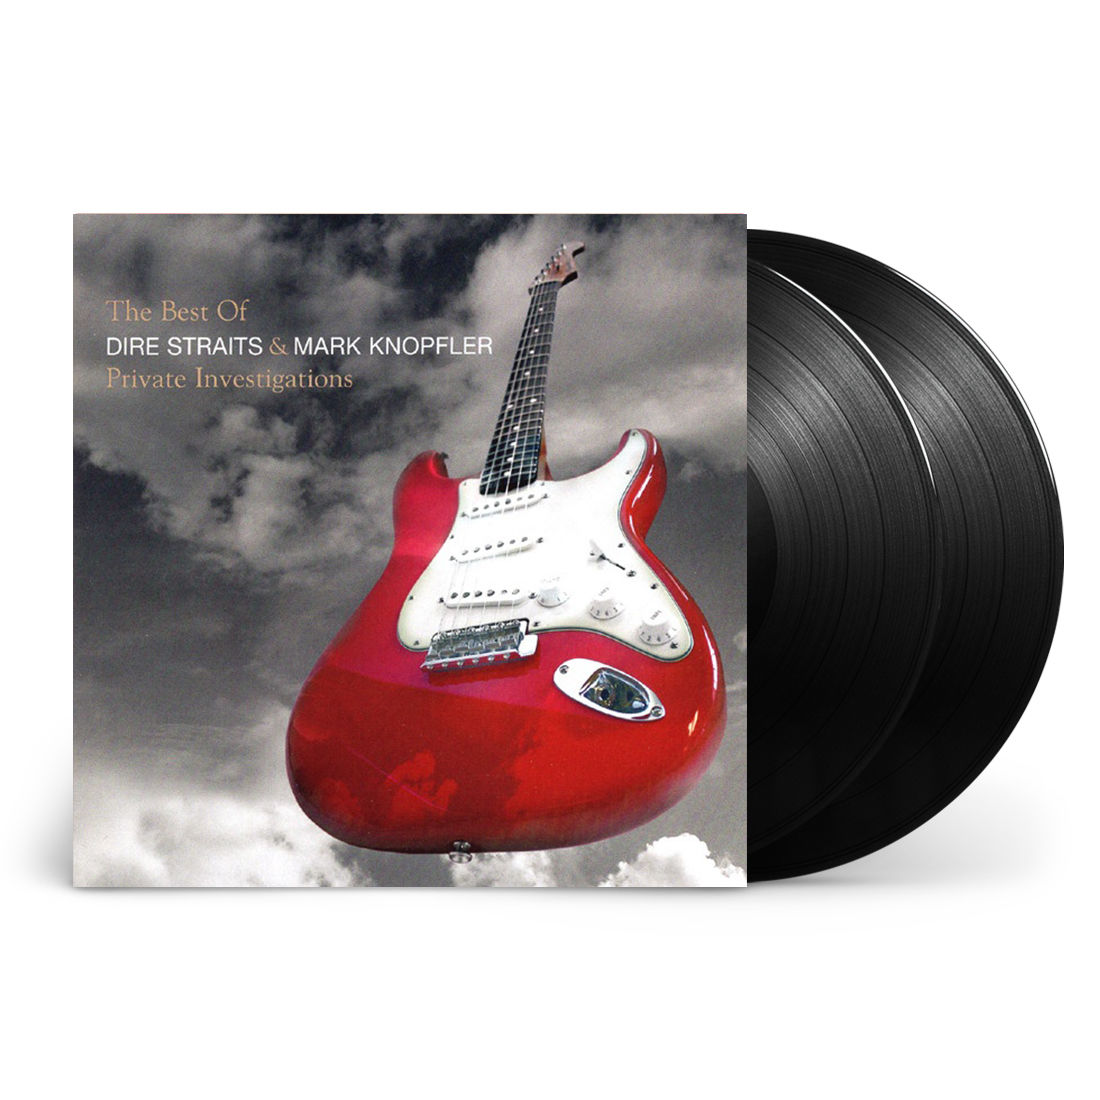 Dire Straits & Mark Knopfler - Private Investigations - The Best of Dire Straits & Mark Knopfler: Vinyl 2LP